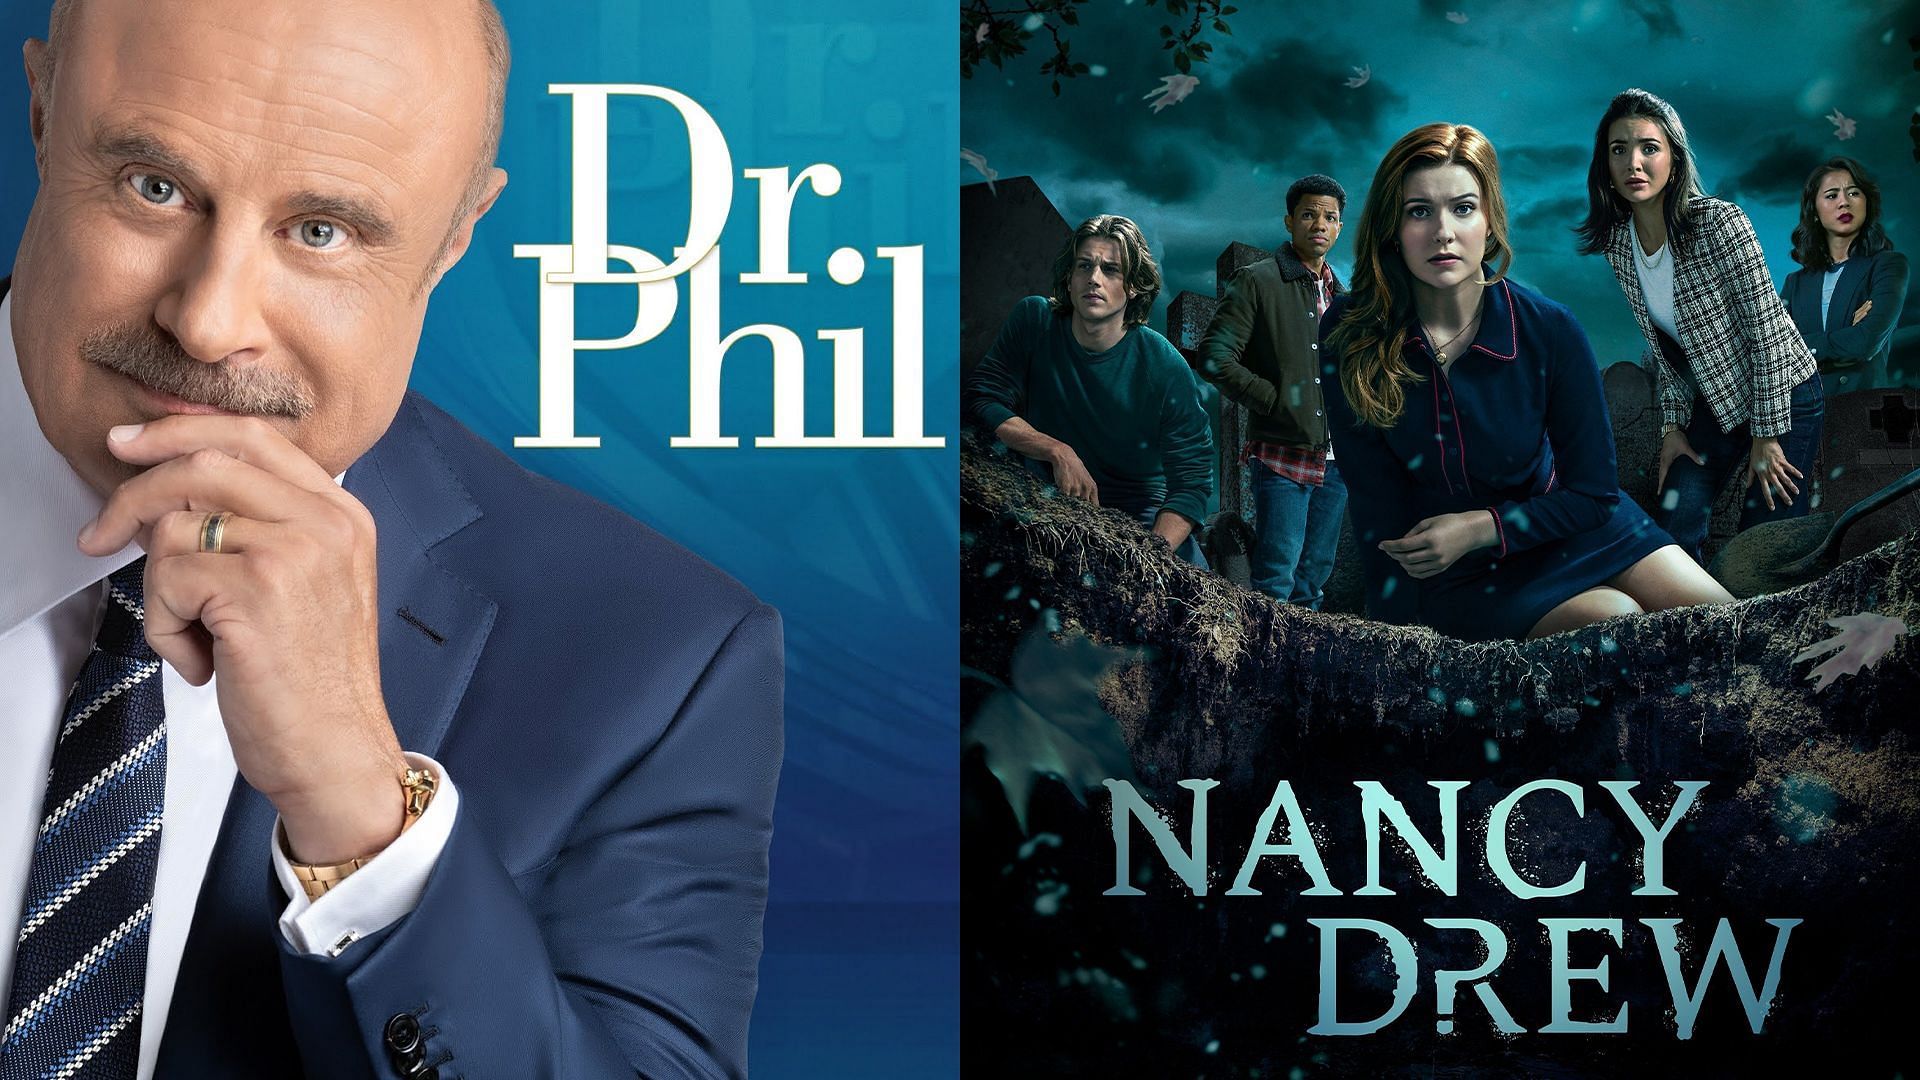 Dr. Phil, Nancy Drew (Image via IMDb)